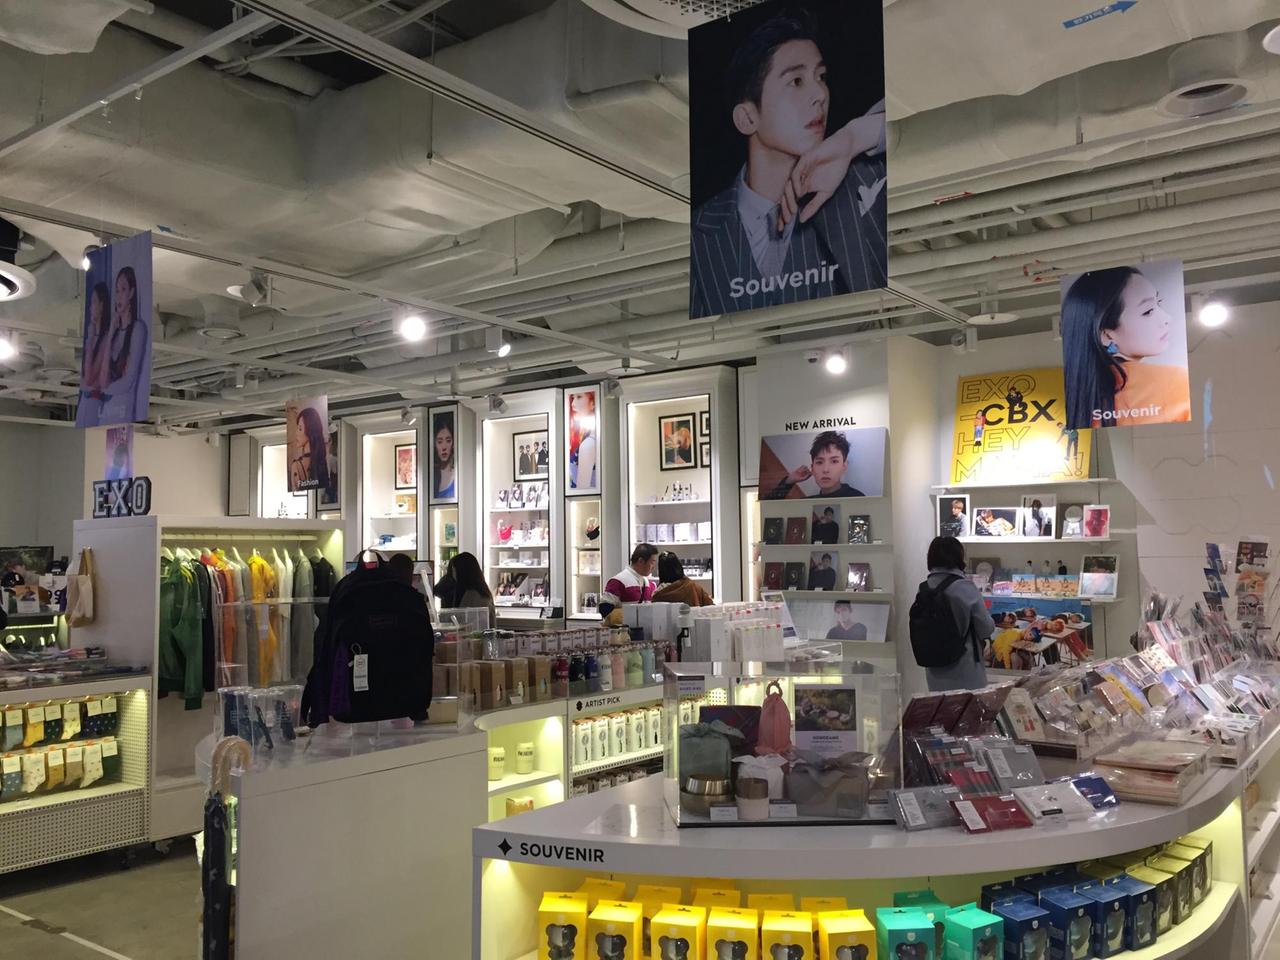 SM, eines der größten Entertainment-Unternehmen Südkoreas, bietet auf mehreren Etagen sämtliche Fanartikel - von CDs über Kleidung, Poster Bücher und vieles mehr